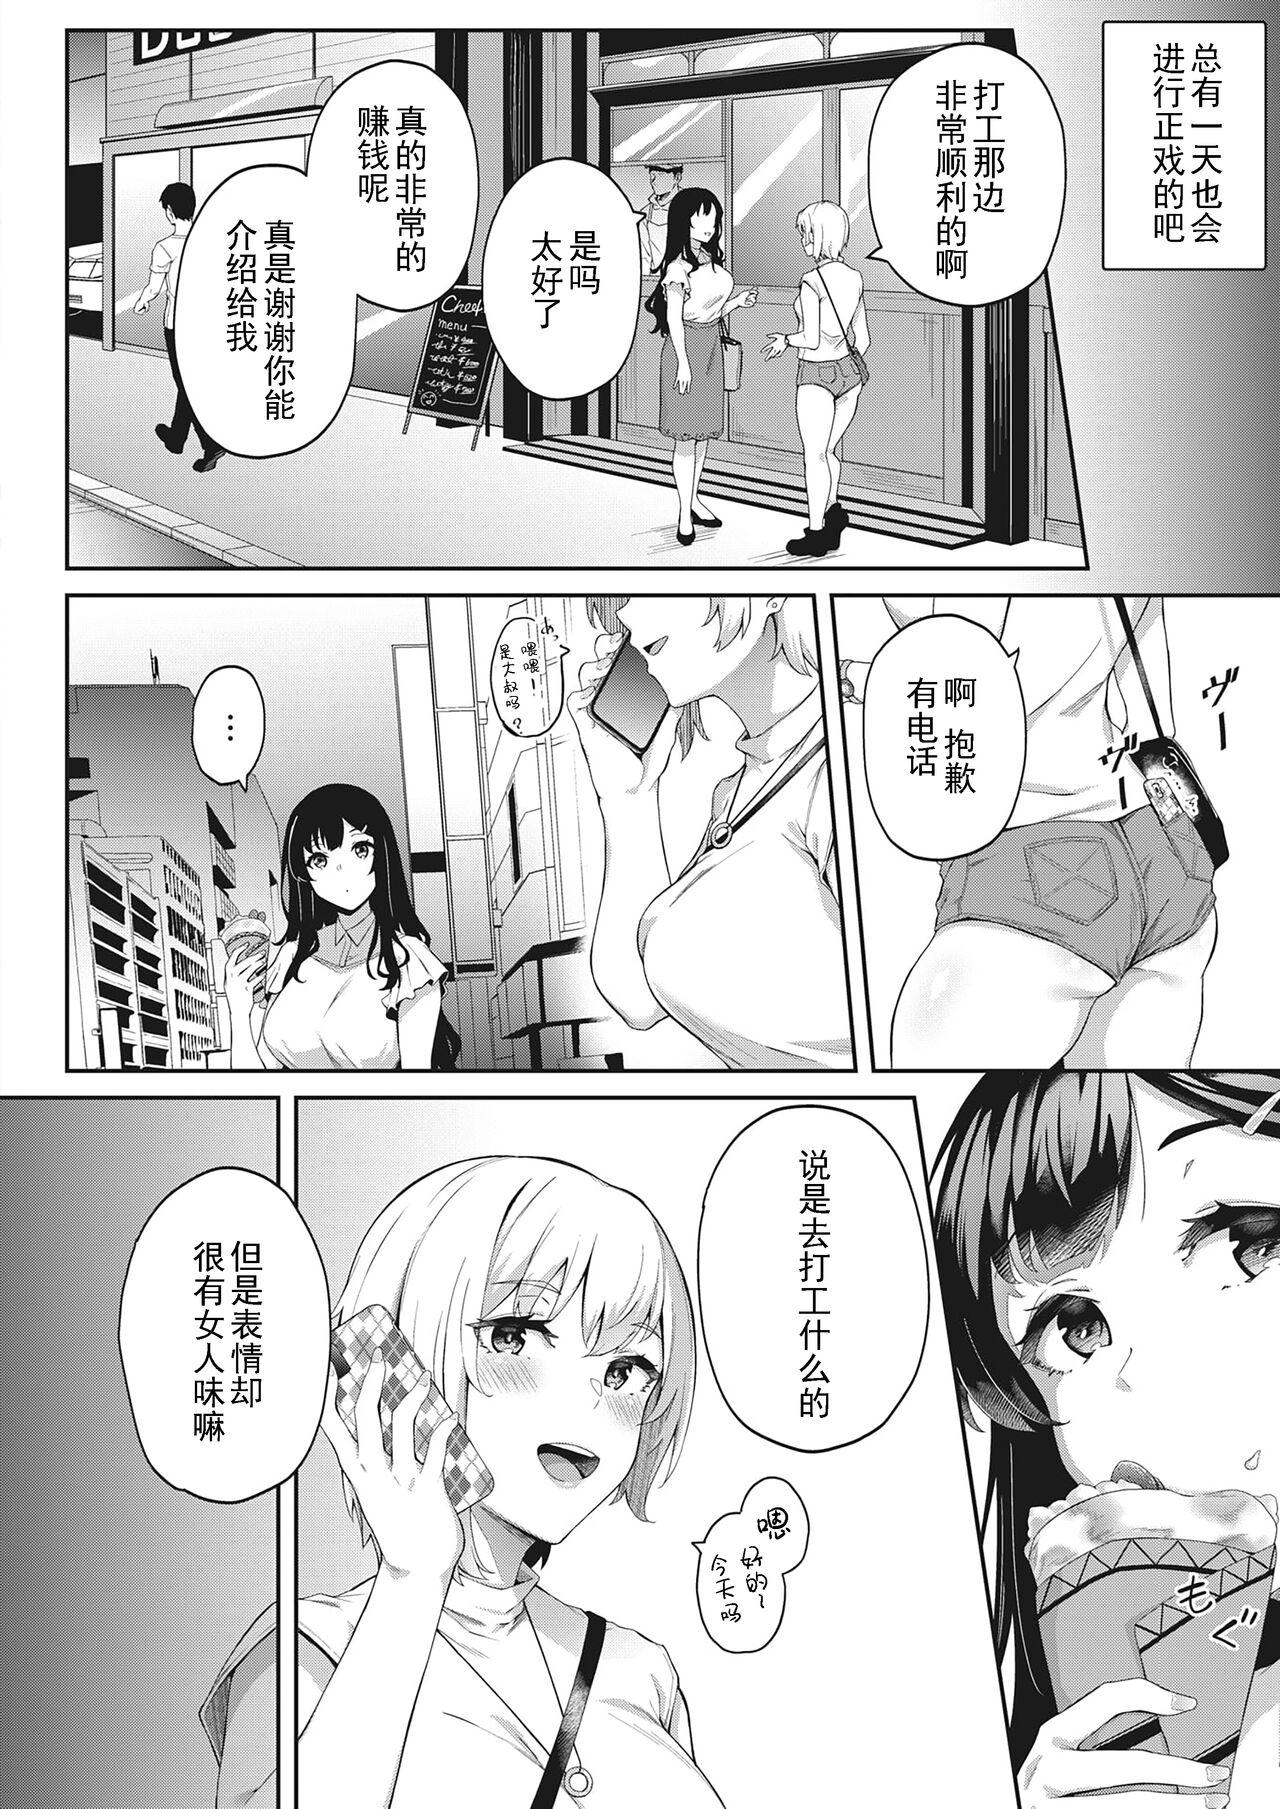 Gayfuck Kimi wa Ikasama o Shite iru Close - Page 12